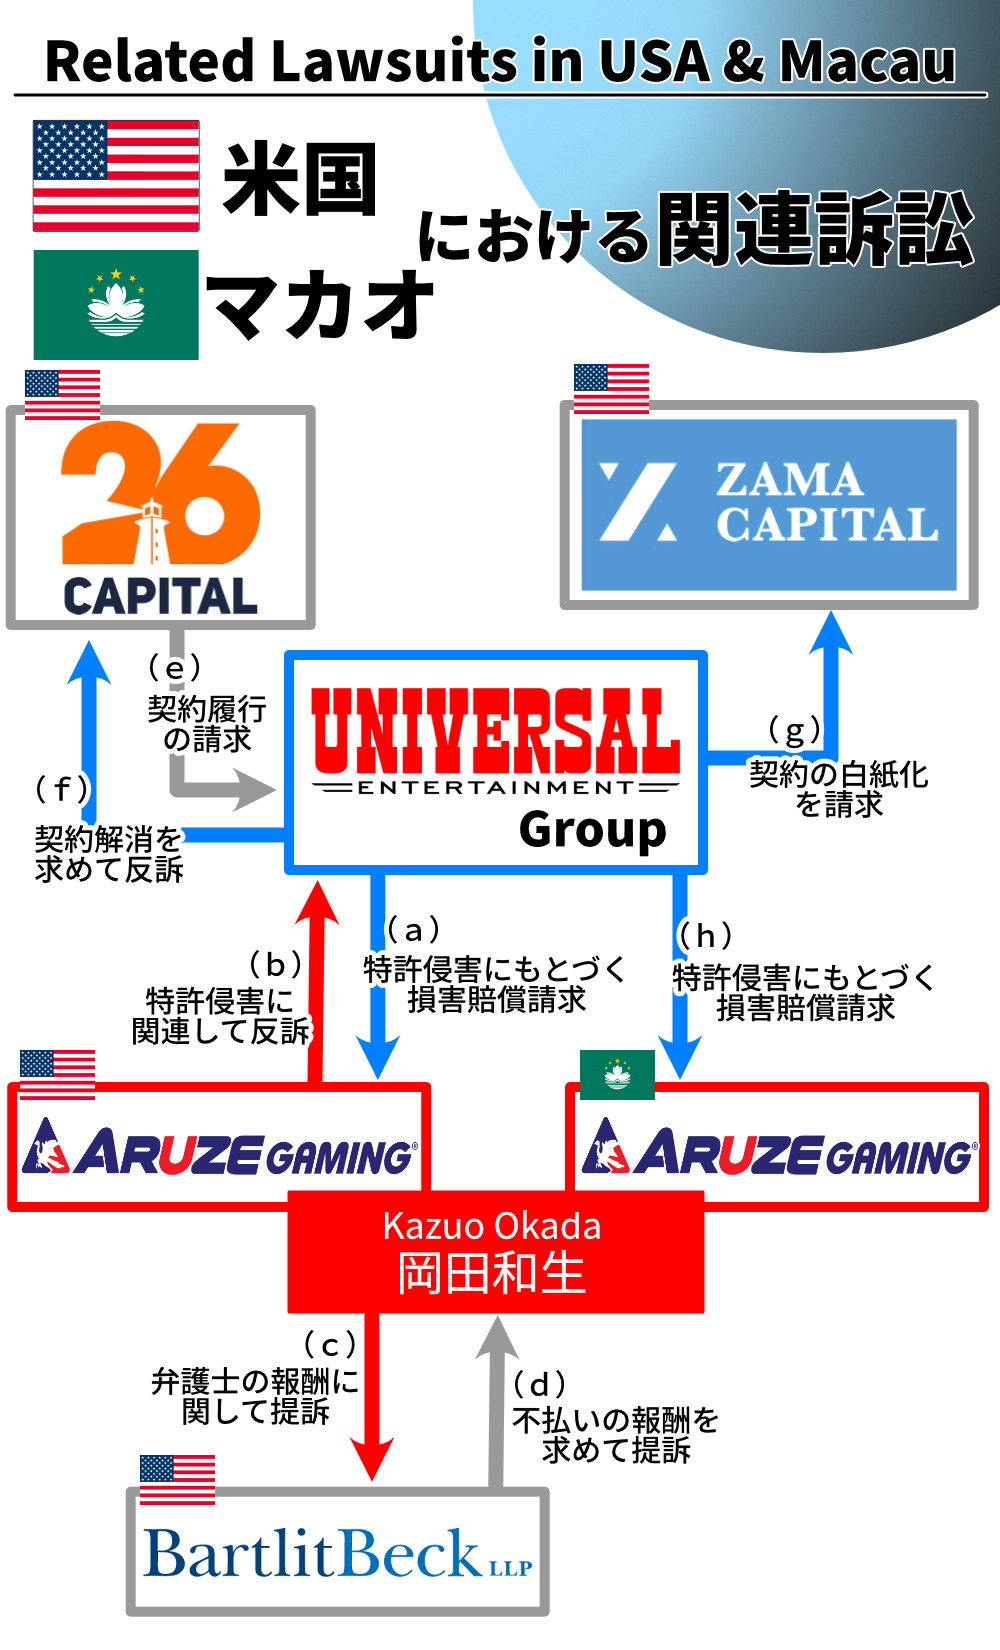 ユニバーサルエンターテインメントと岡田和生に関連する訴訟の相関図（米国とマカオ）